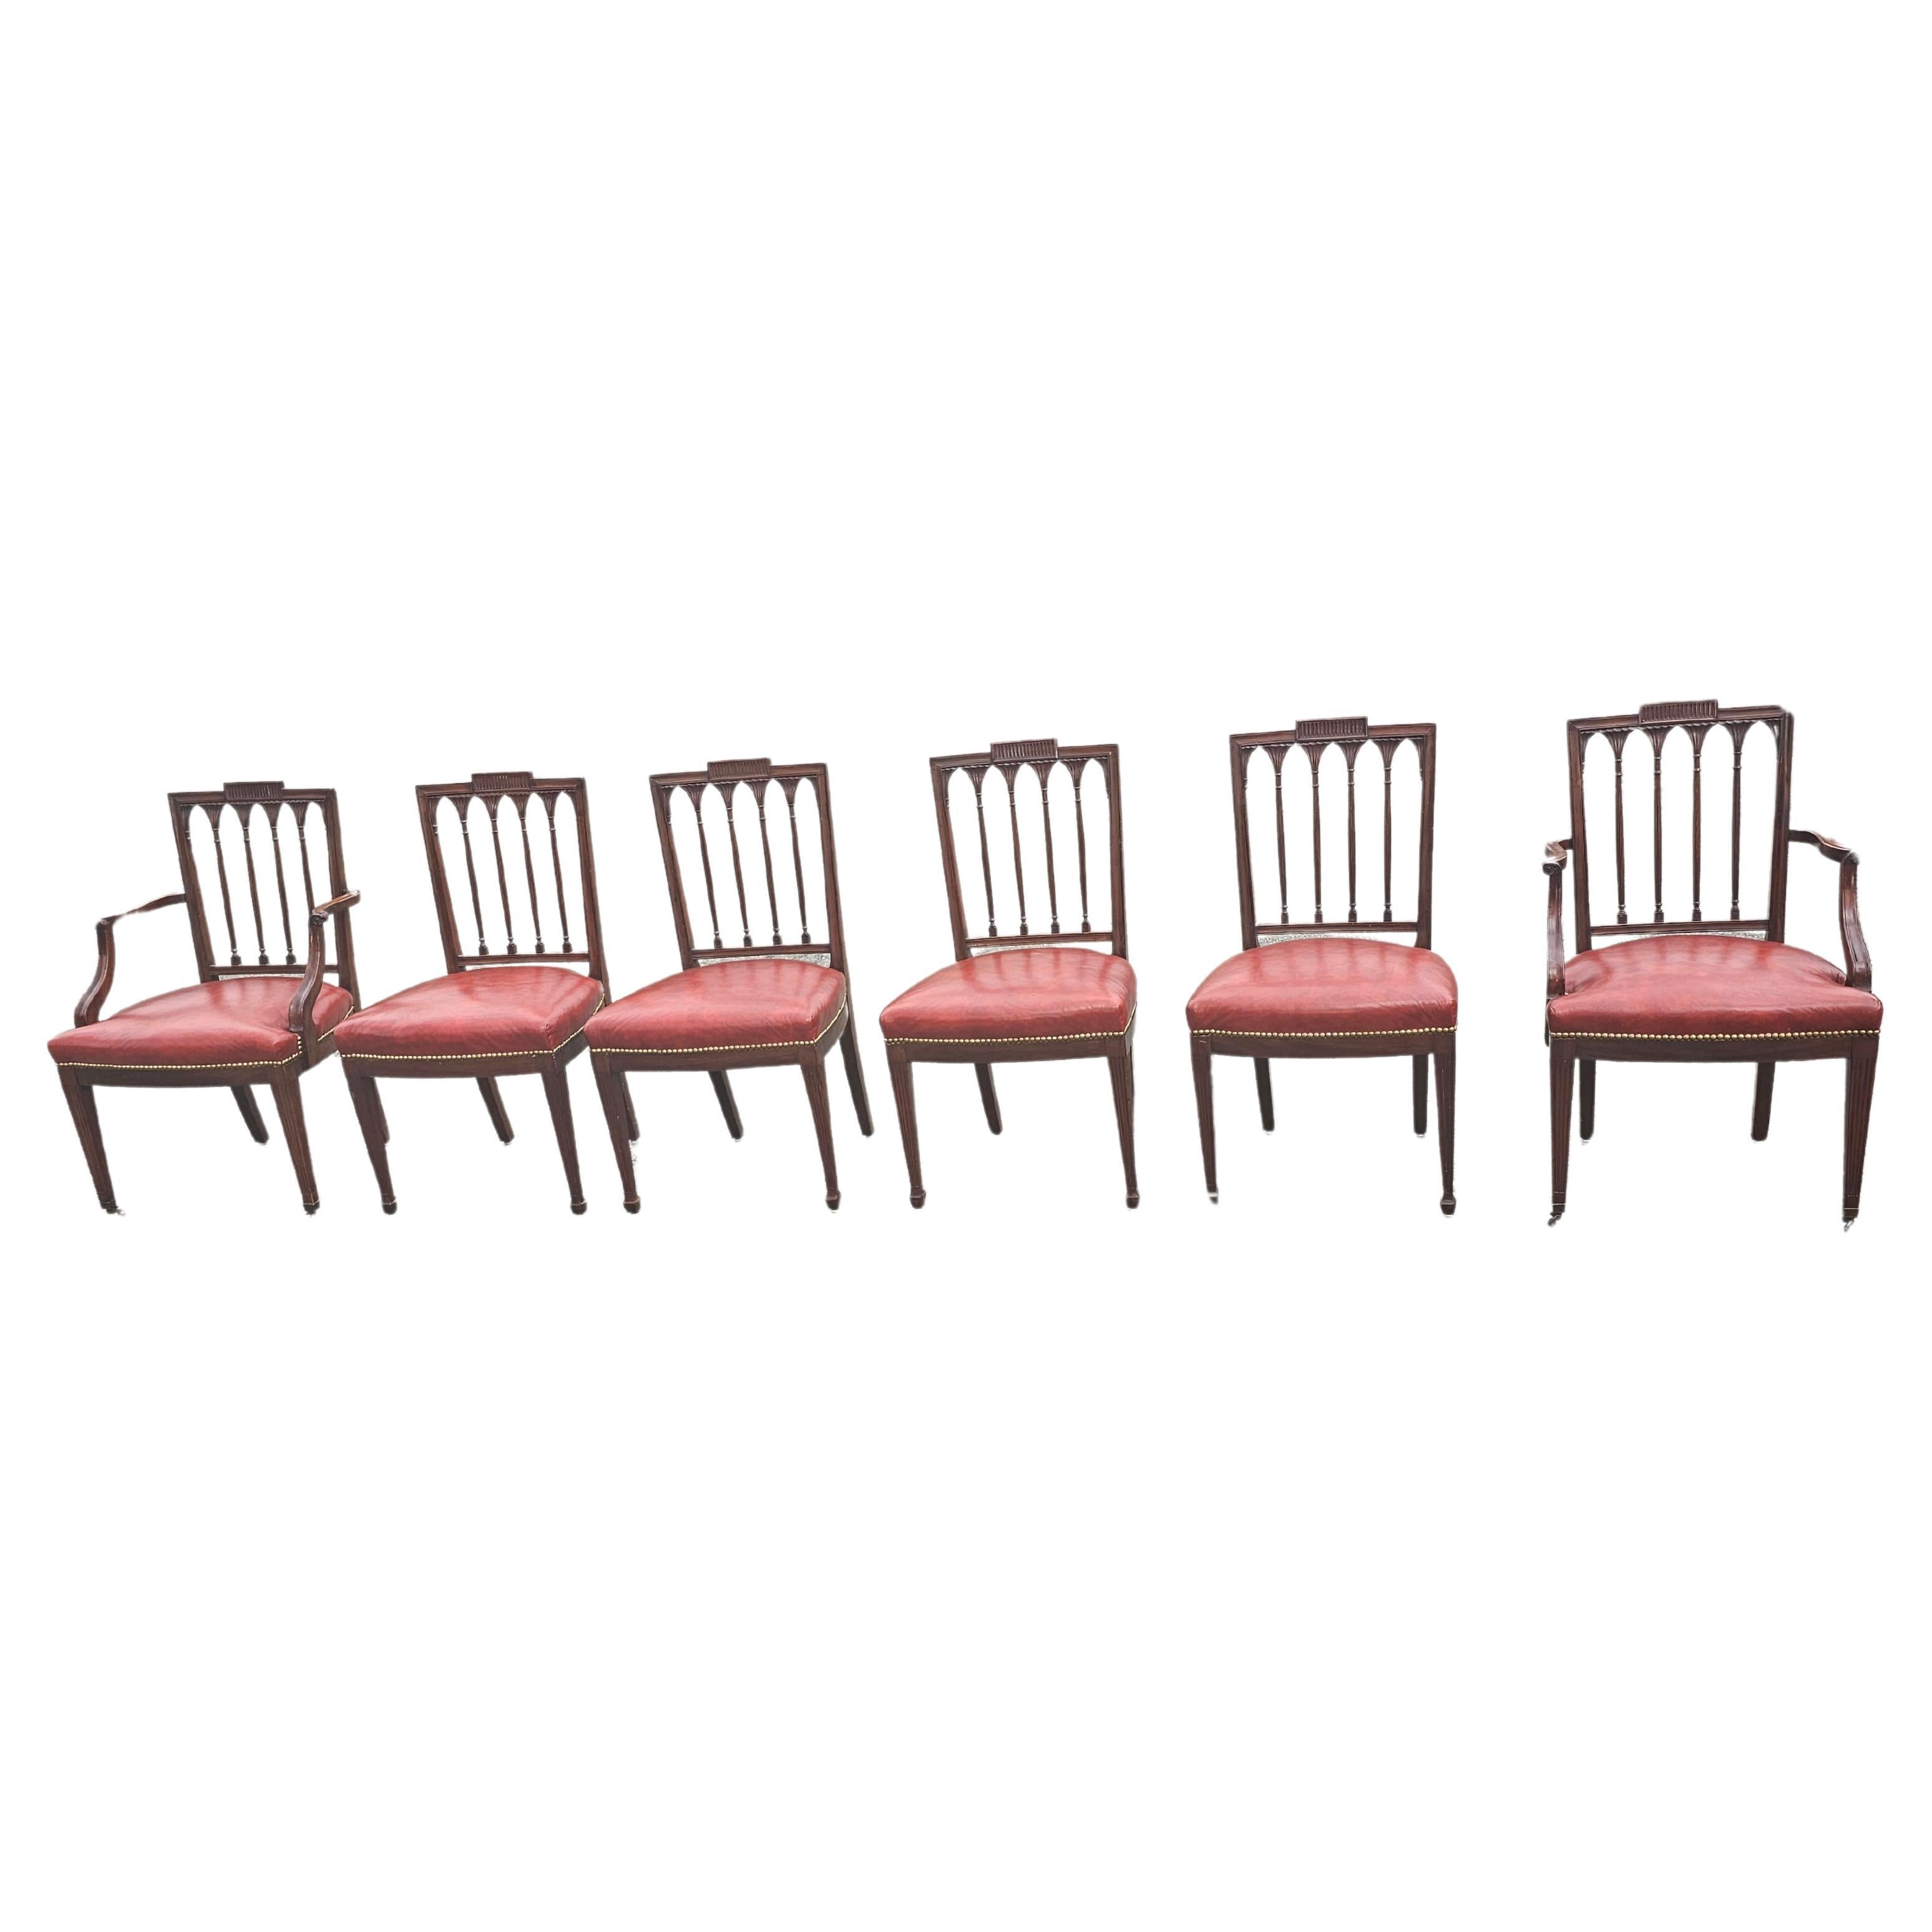 Ein Satz von sechs George III Stil Mahagoni Leder gepolstert  Sitz Esszimmerstühle. Feine Schnitzereien auf der Rückseite. Nageln Sie die Zierleisten an. In sehr gutem Vintage-Zustand. Keine Risse auf dem Ledersitz. Maße: 22